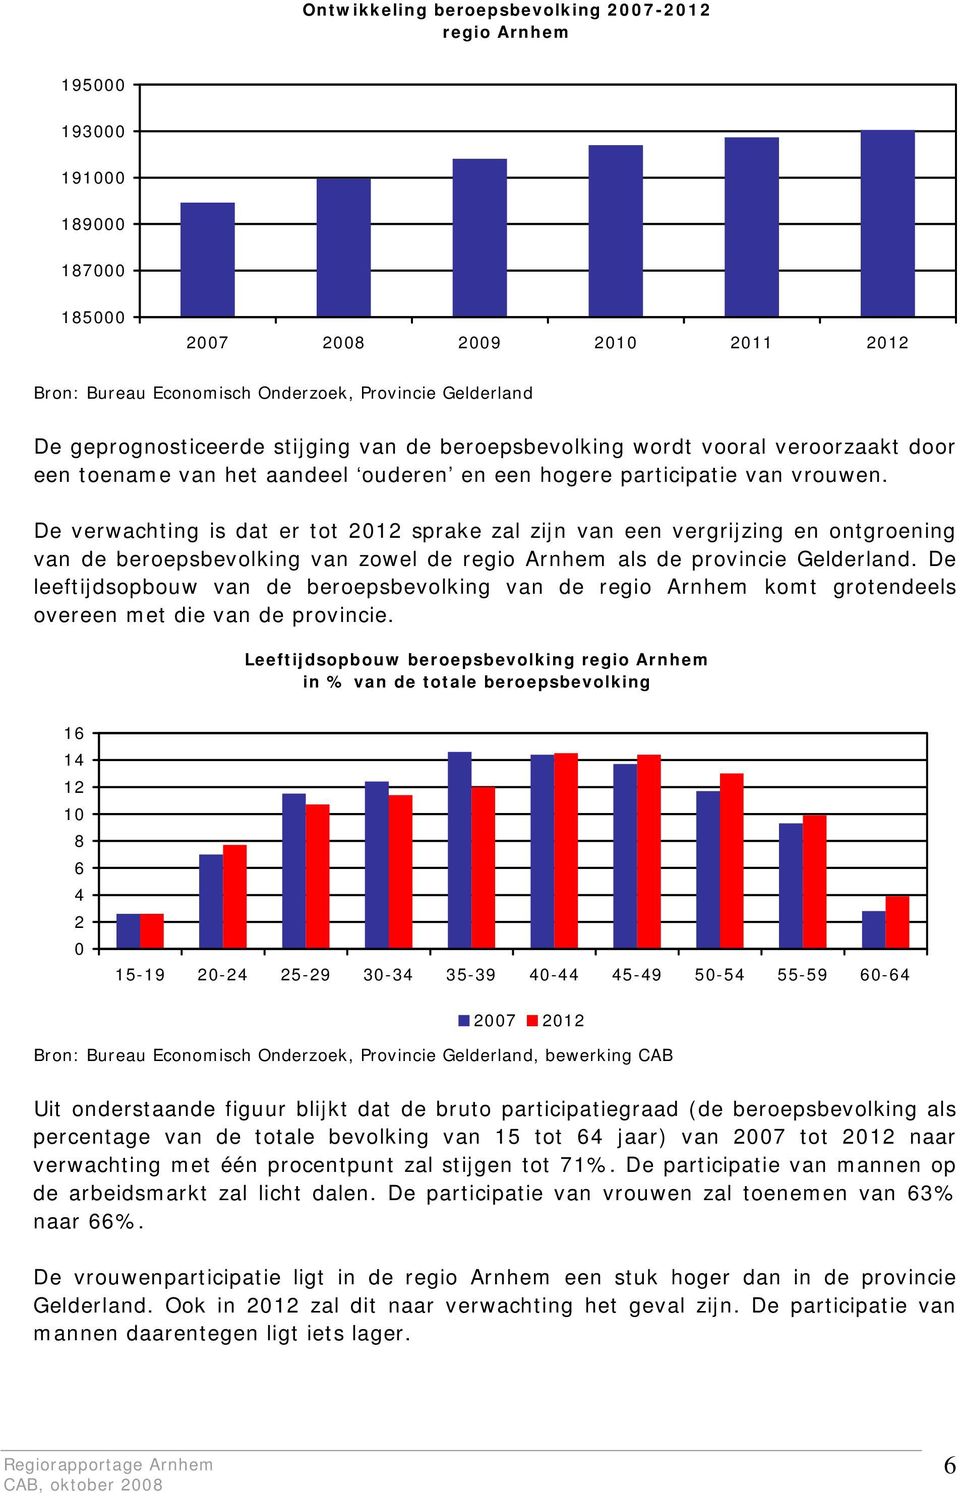 De verwachting is dat er tot 2012 sprake zal zijn van een vergrijzing en ontgroening van de beroepsbevolking van zowel de regio Arnhem als de provincie Gelderland.